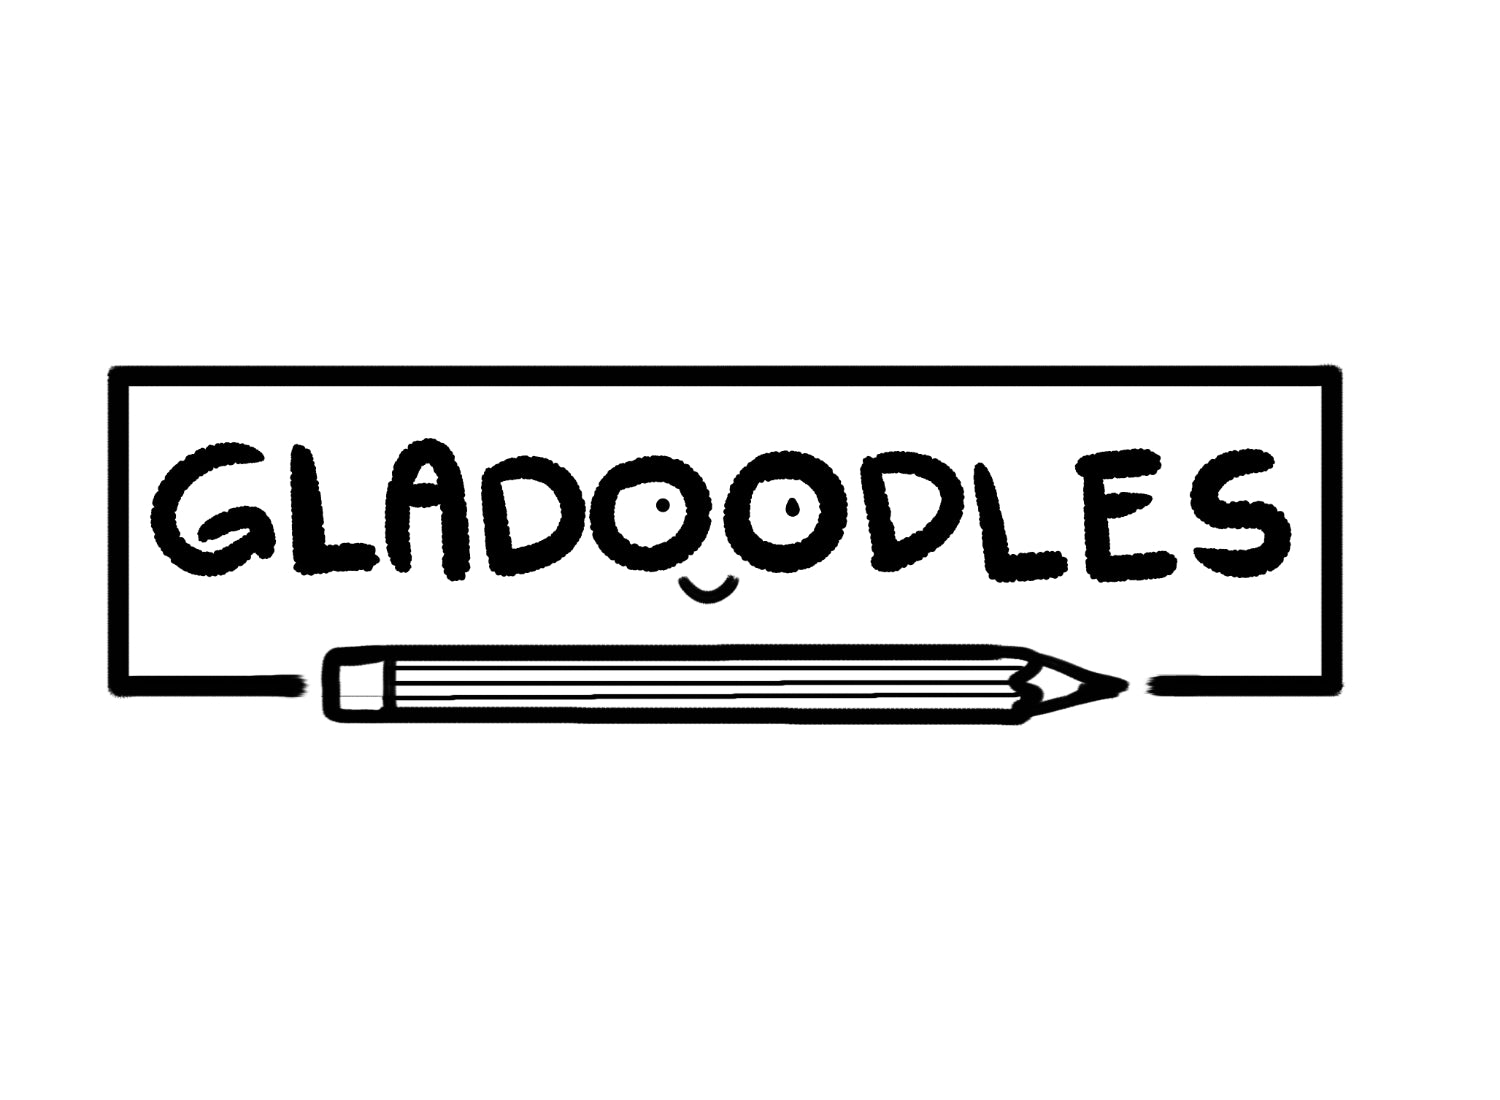 Gladoodles